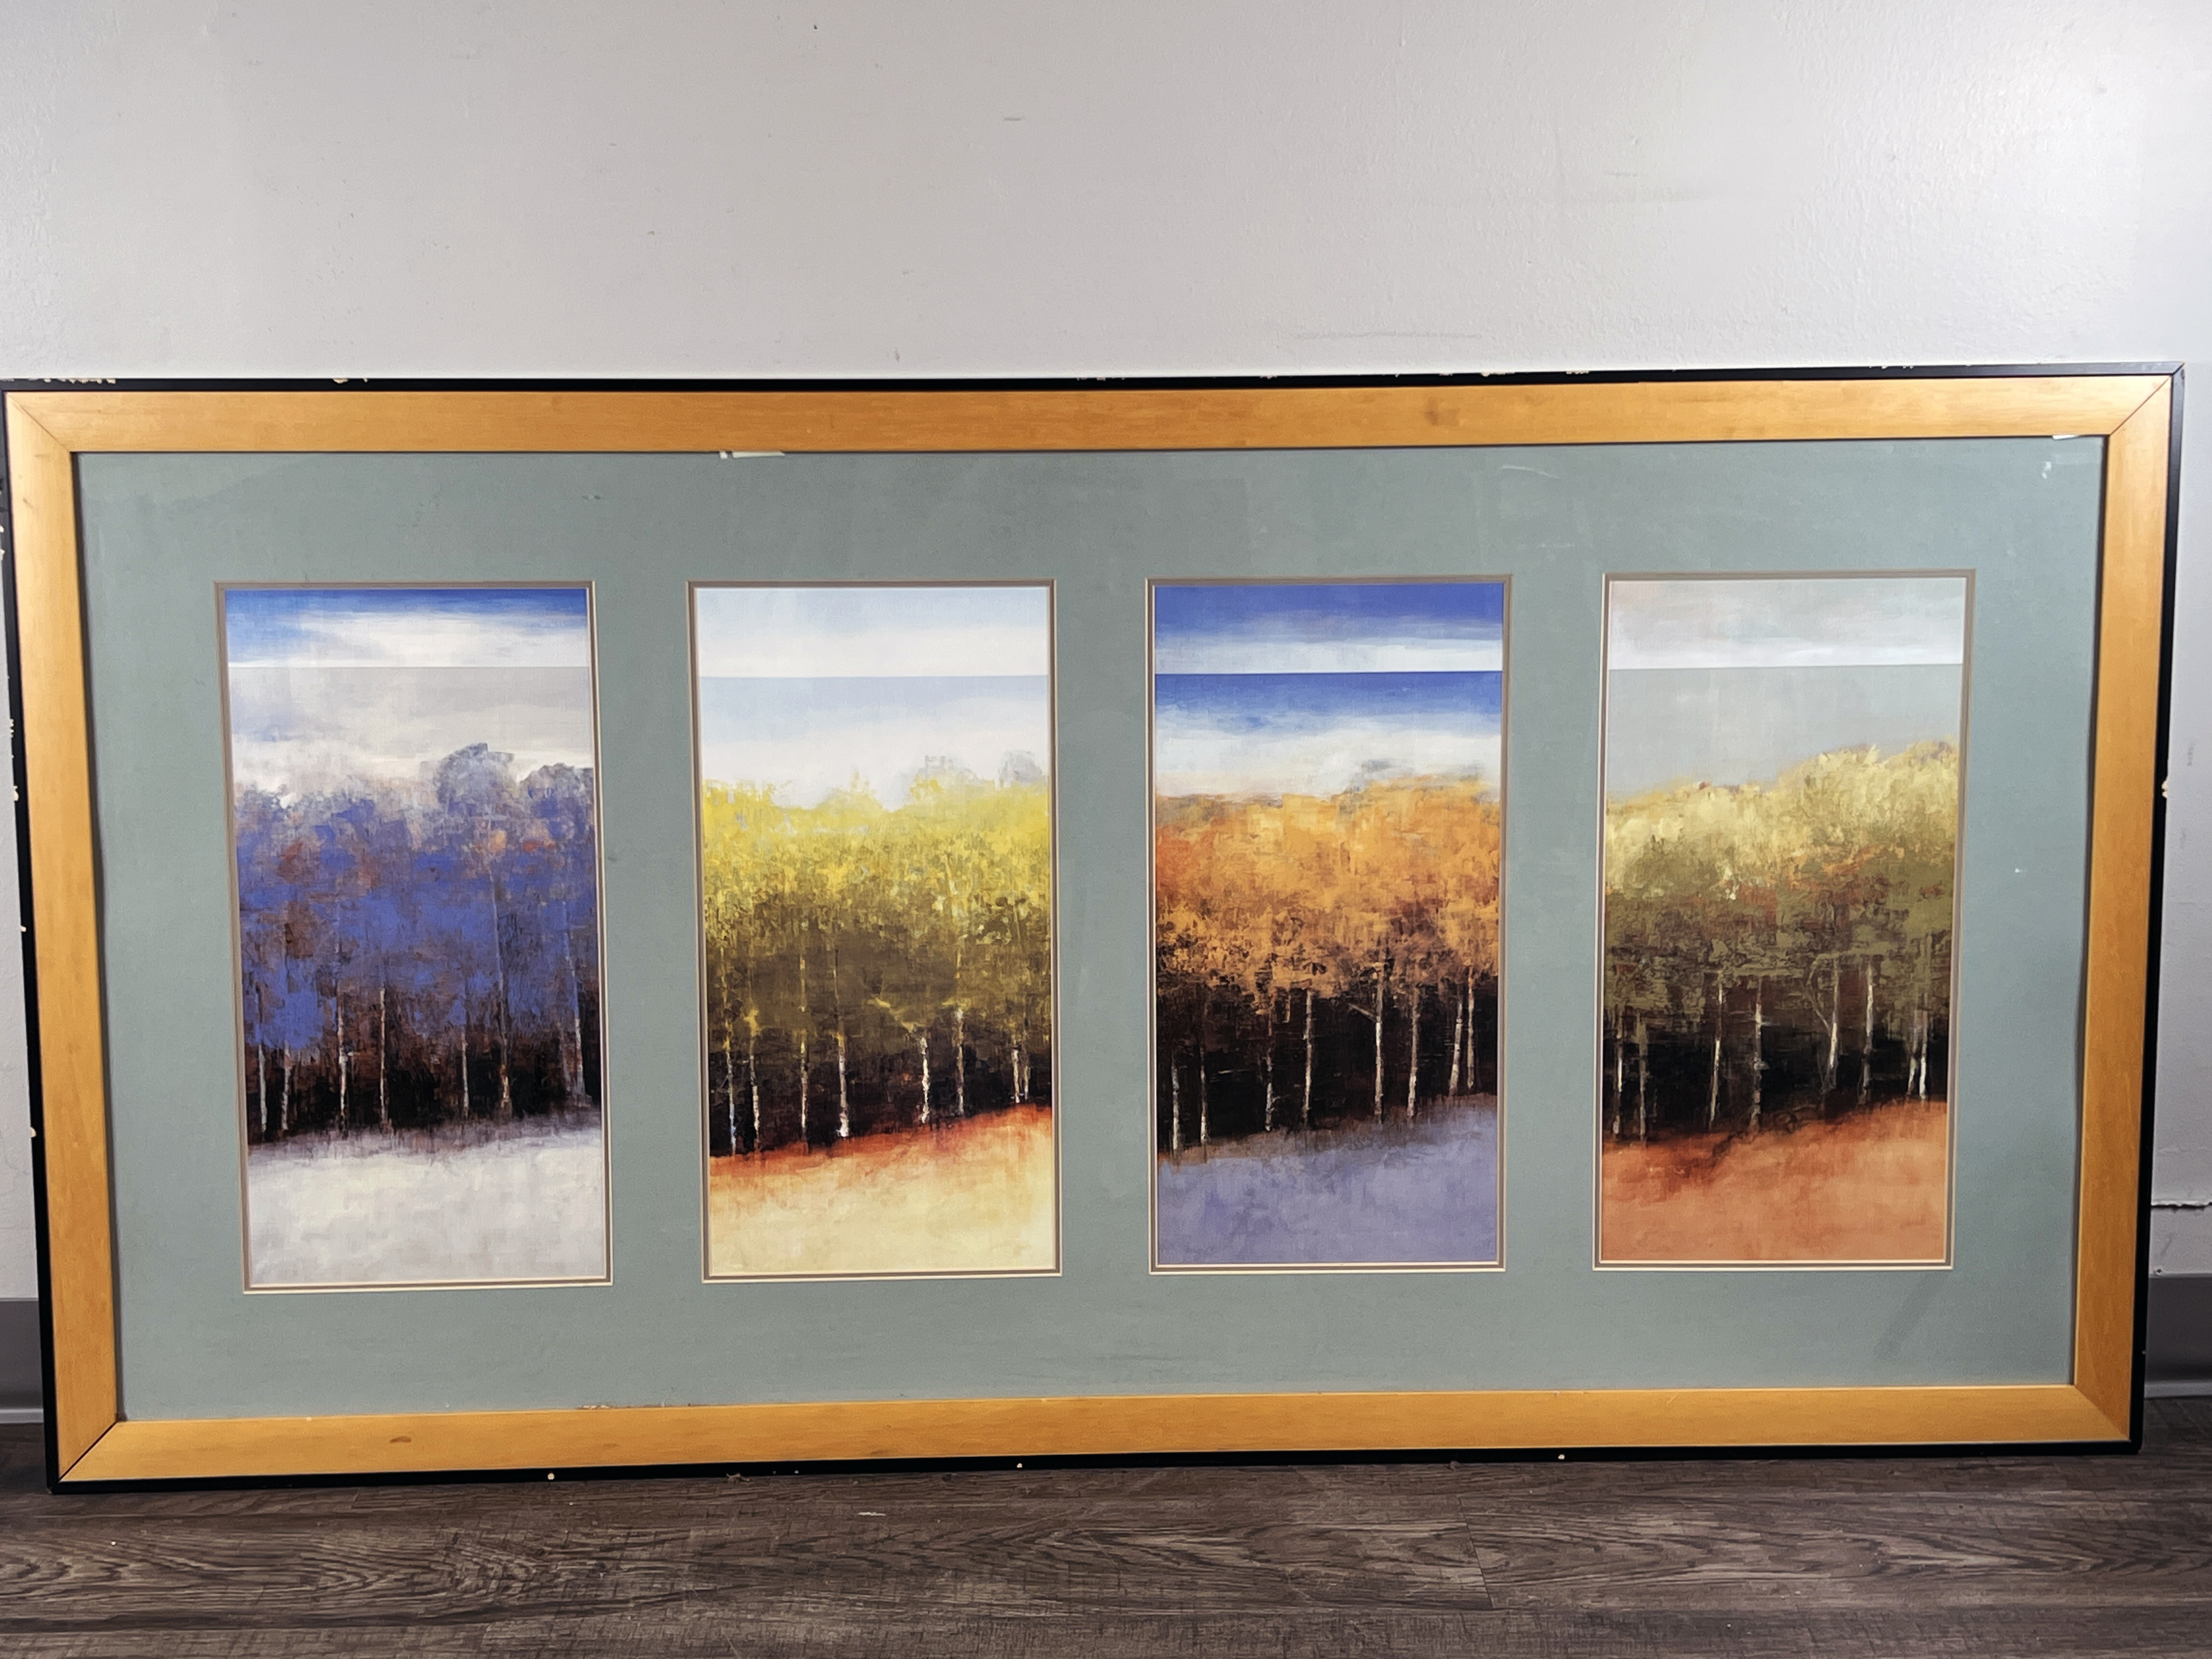 Four Seasons Prints Of Landscape image 1